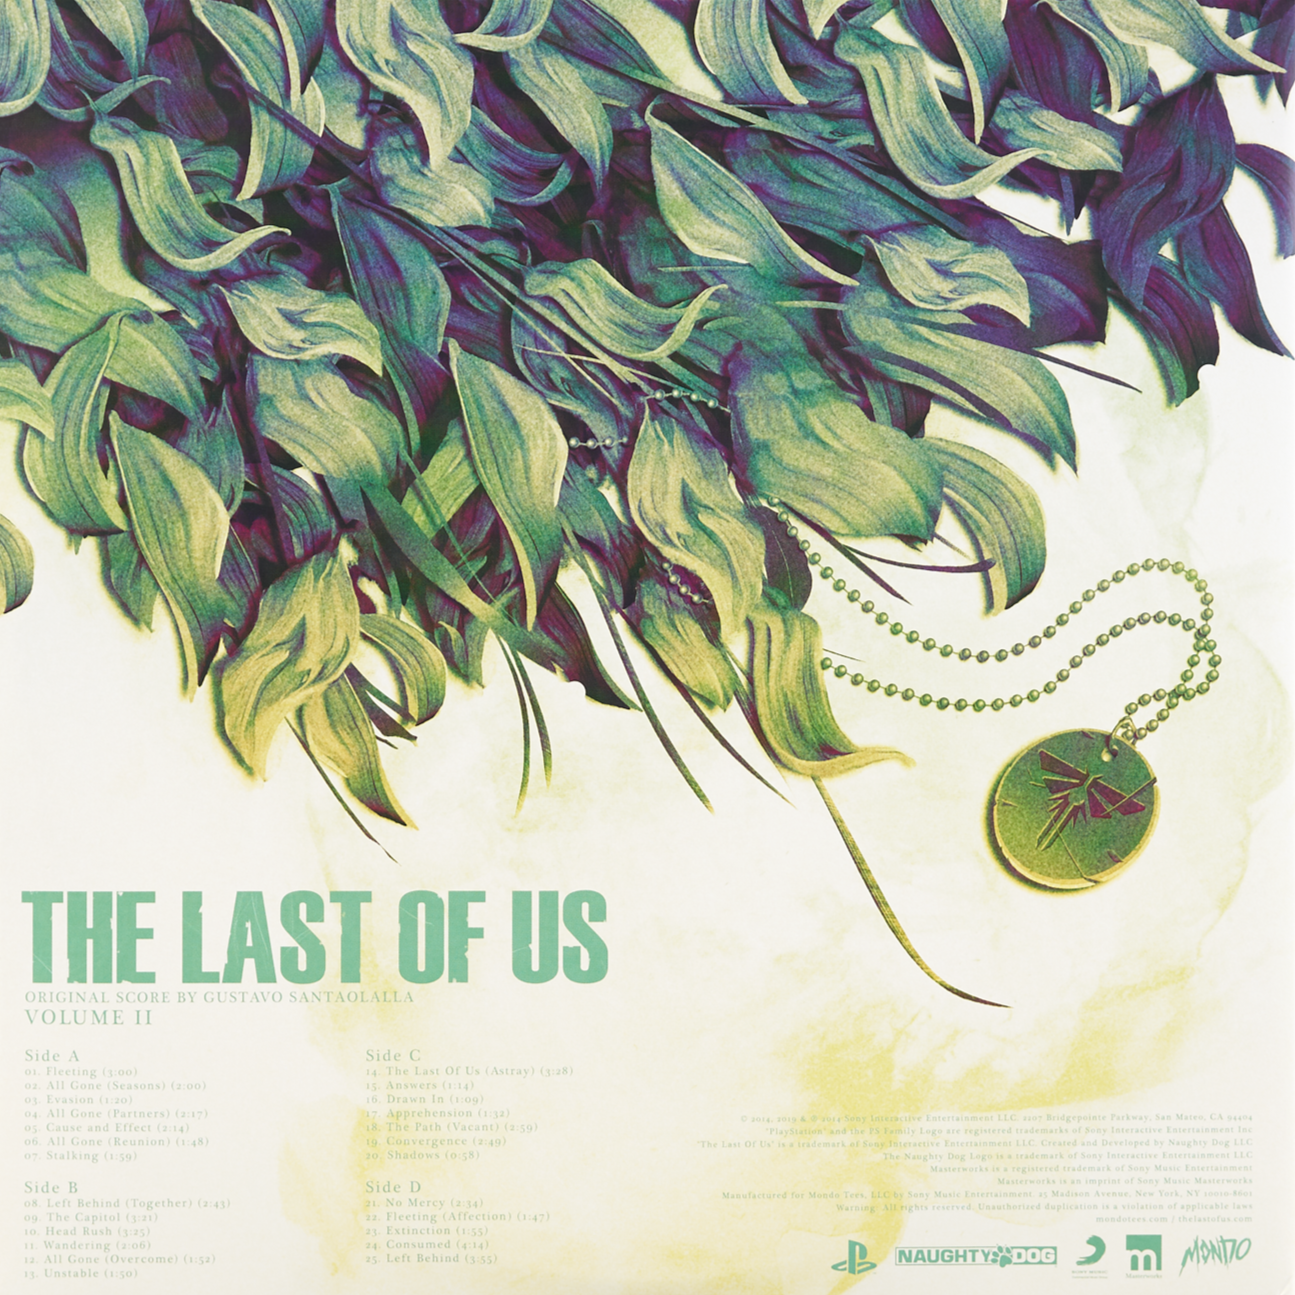 MOND-029 - Gustavo Santaolalla - The Last of Us Vol. 2 - Video Game Soundtrack